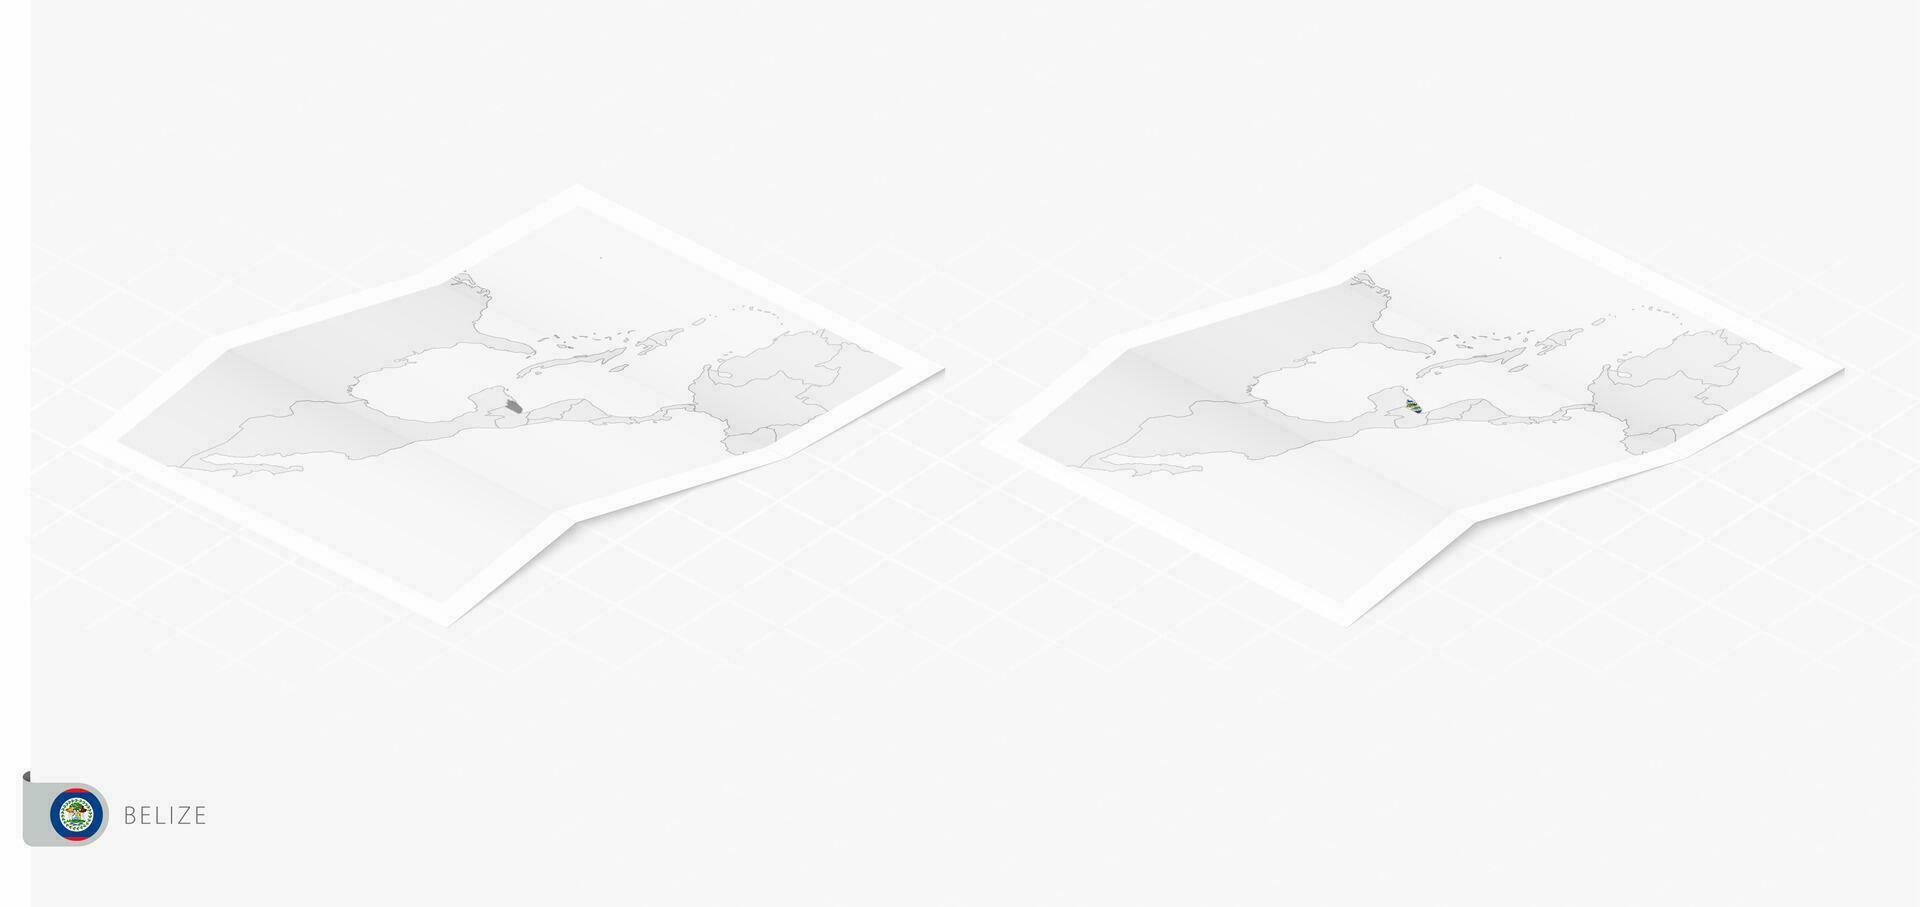 impostato di Due realistico carta geografica di belize con ombra. il bandiera e carta geografica di belize nel isometrico stile. vettore